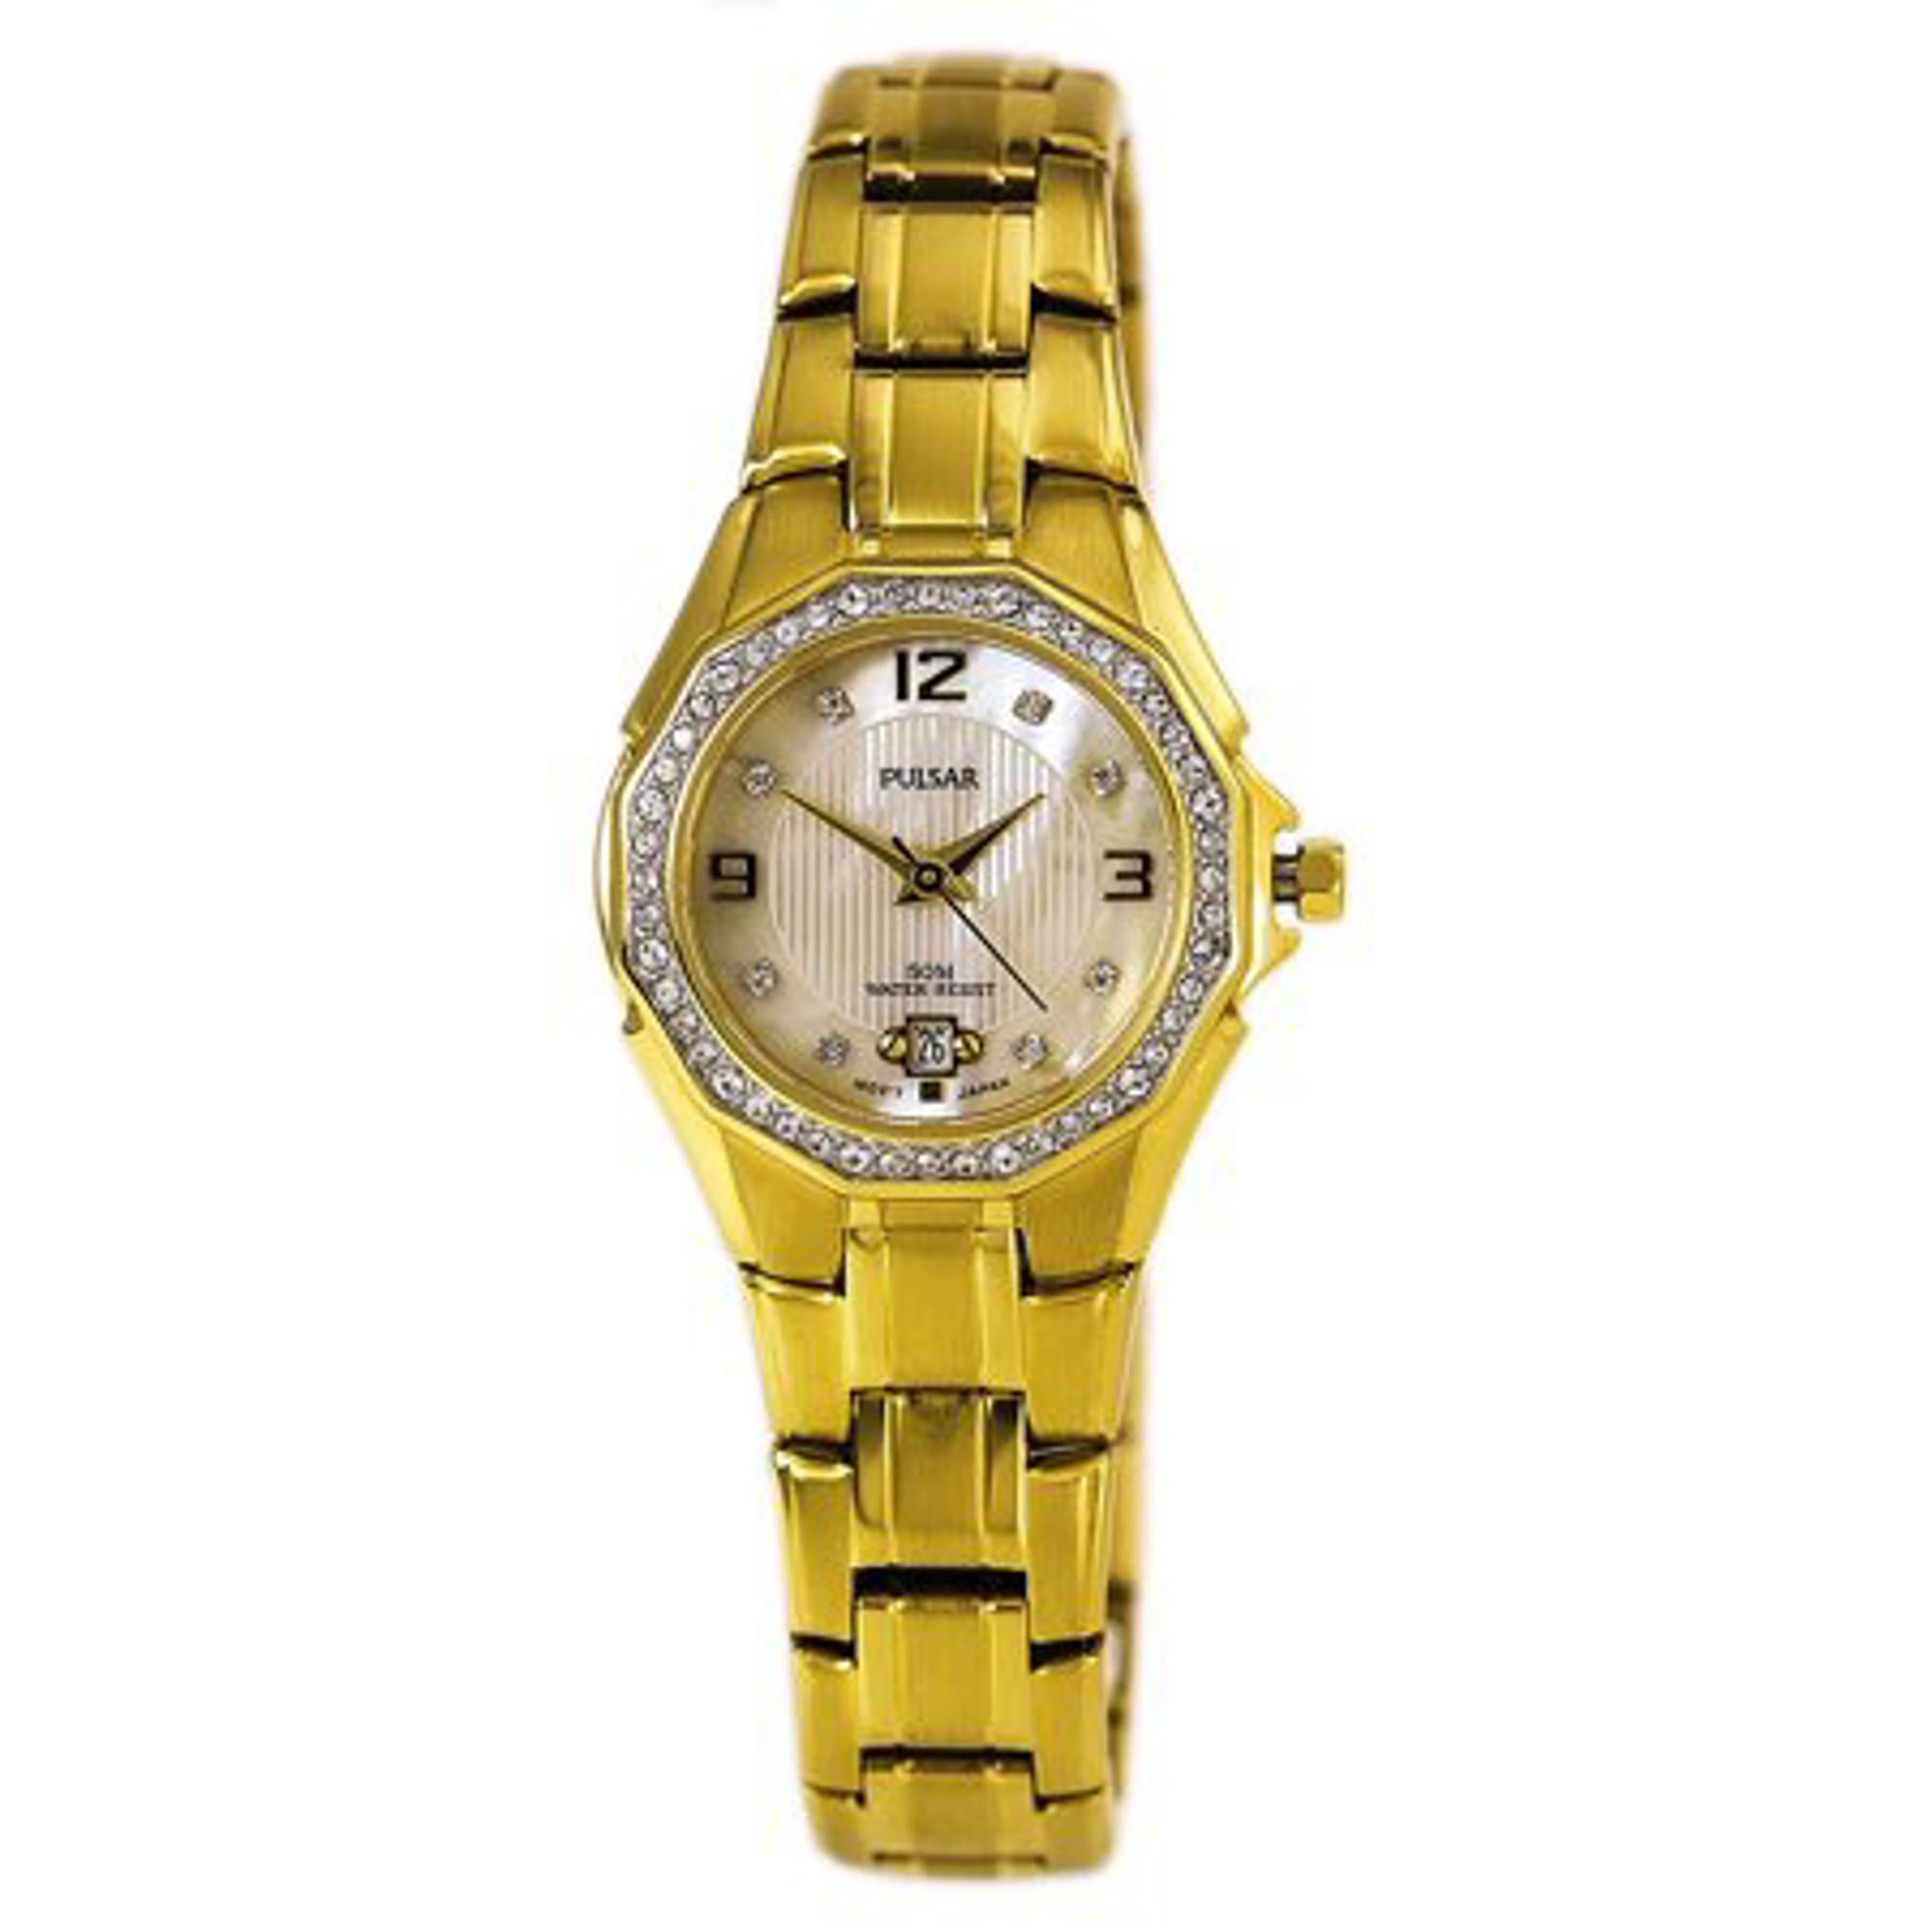 Pre-owned Pulsar Gold-Ton Edelstahl Kristall MOP Zifferblatt Damen Quarzuhr PXT800. Die Uhr hat einen kleinen Kratzer und Flecken auf dem Gehäuse und Armband.  Dieser schöne Zeitmesser wird von einem Quarzwerk (Batterie) angetrieben und verfügt